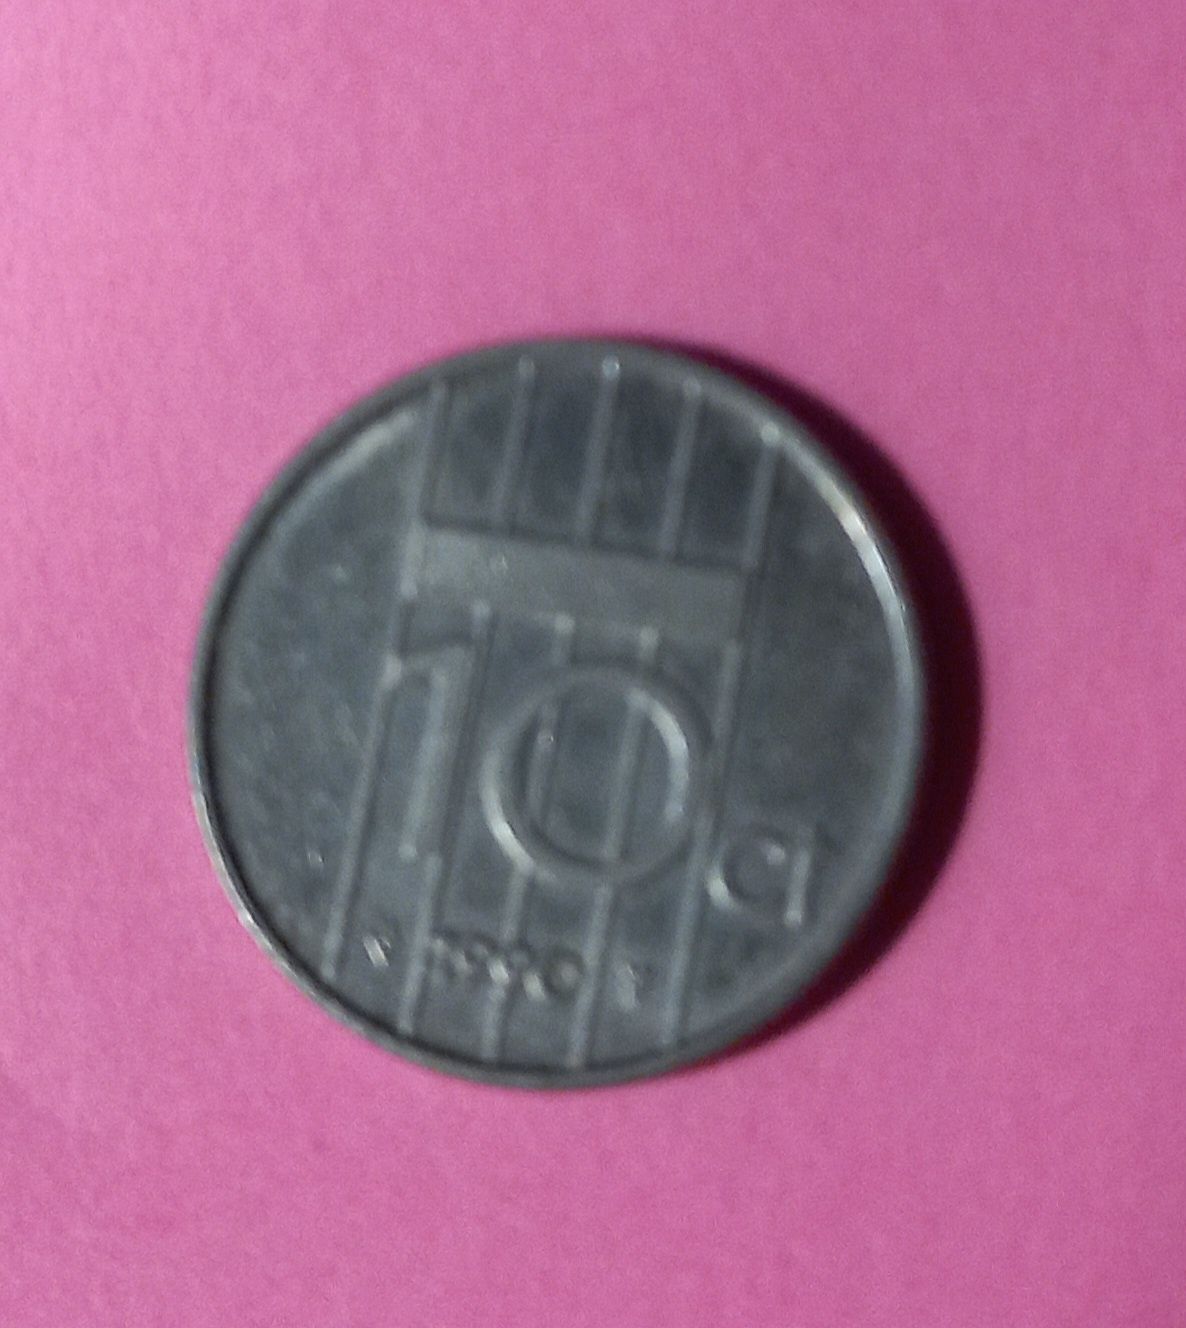 Moneta BEATRIX KONINGIN Der Nederlanden 10 centów 1990 rok